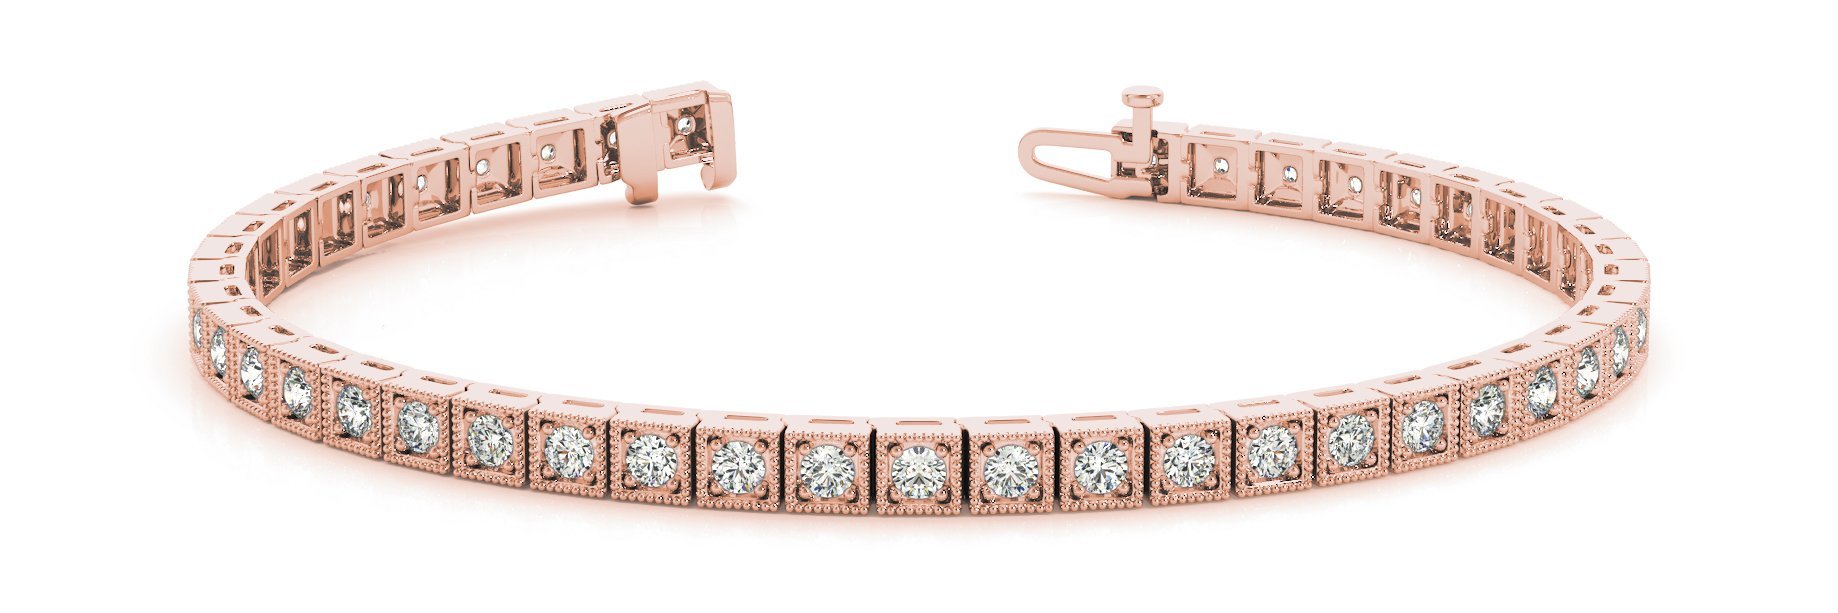 Line Diamond Bracelet 1.06ct tw Ladies - 14kt Gold